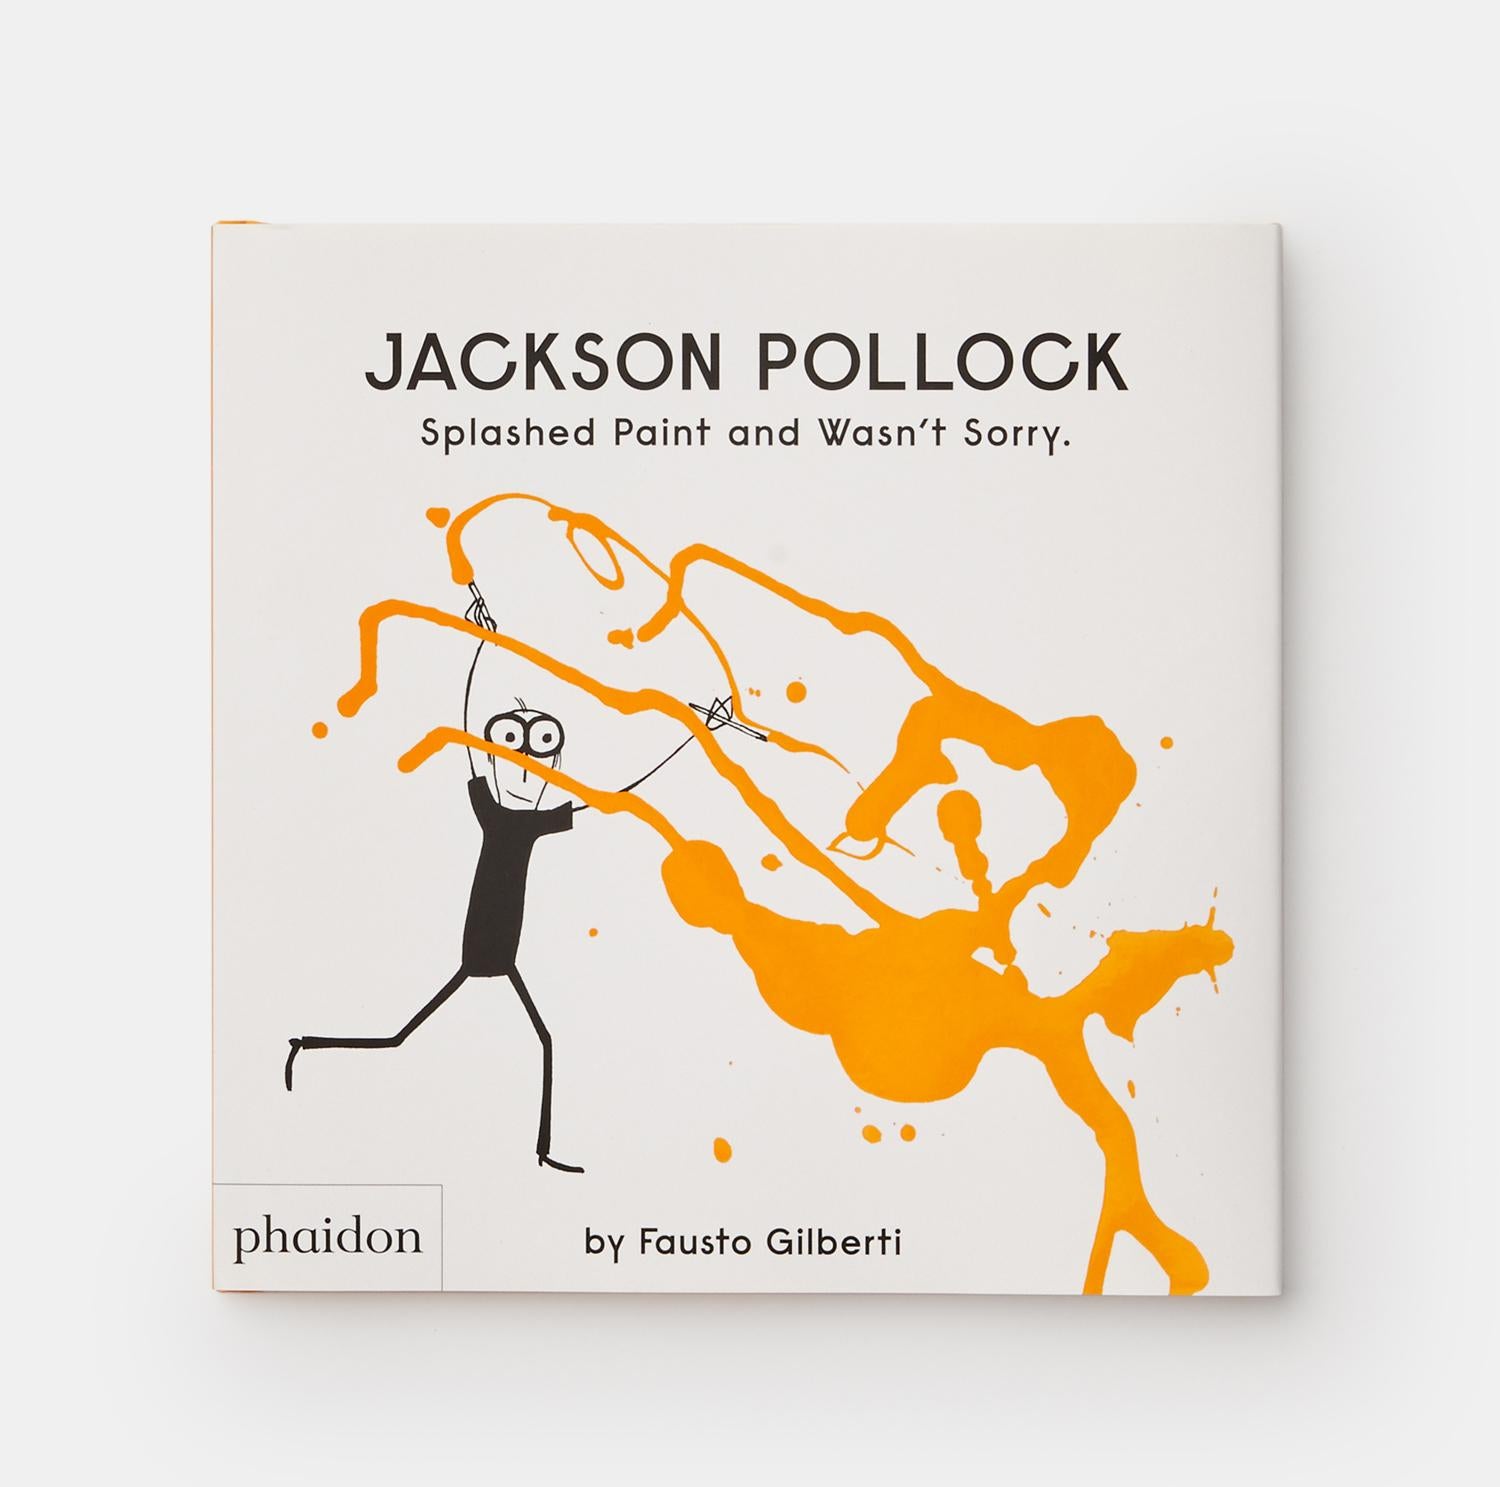 Ein kluges, charmant schrulliges Porträt des Malers Jackson Pollock - und das erste in einer Reihe von Bilderbuch-Biografien zeitgenössischer Künstler
Jackson Pollock war anders als alle anderen Maler. Anstatt vor einer Staffelei mit Pinseln zu